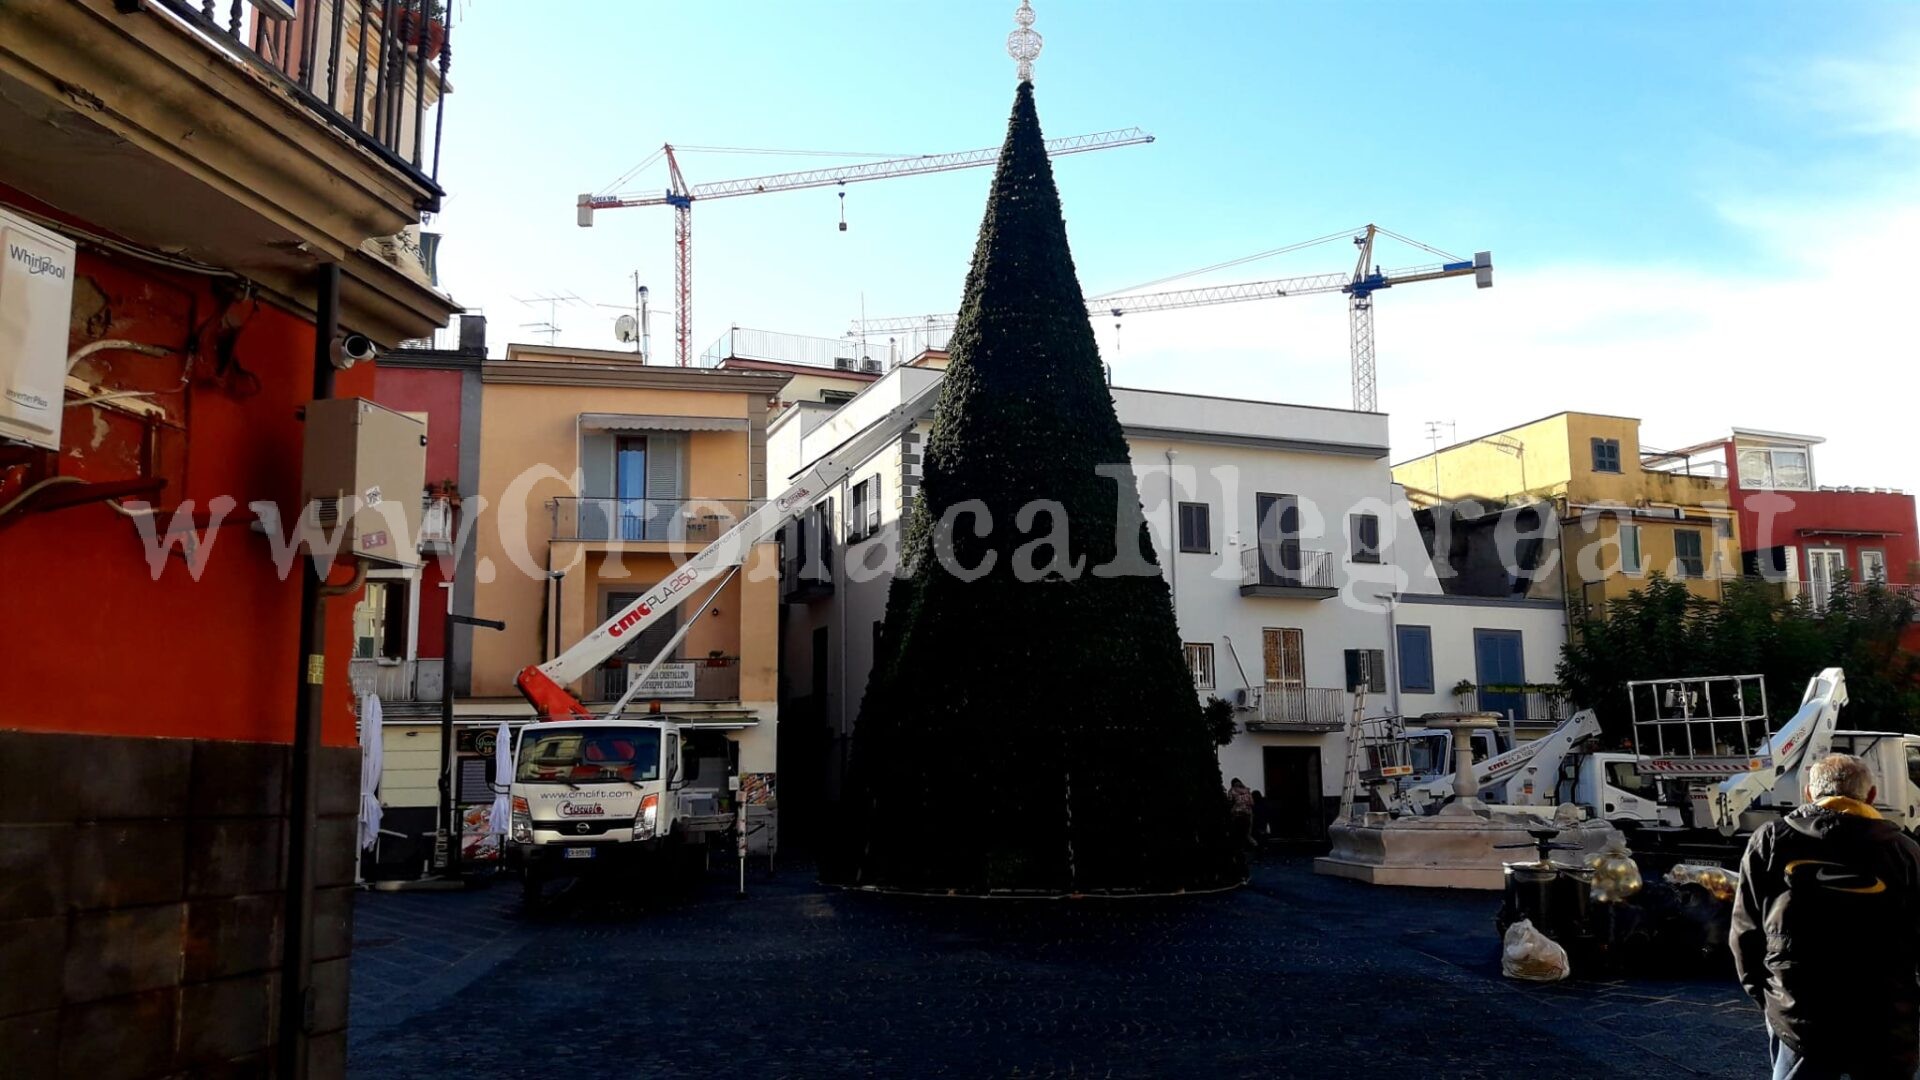 Natale a Pozzuoli: solo pochi alberi luminosi in vari punti della città